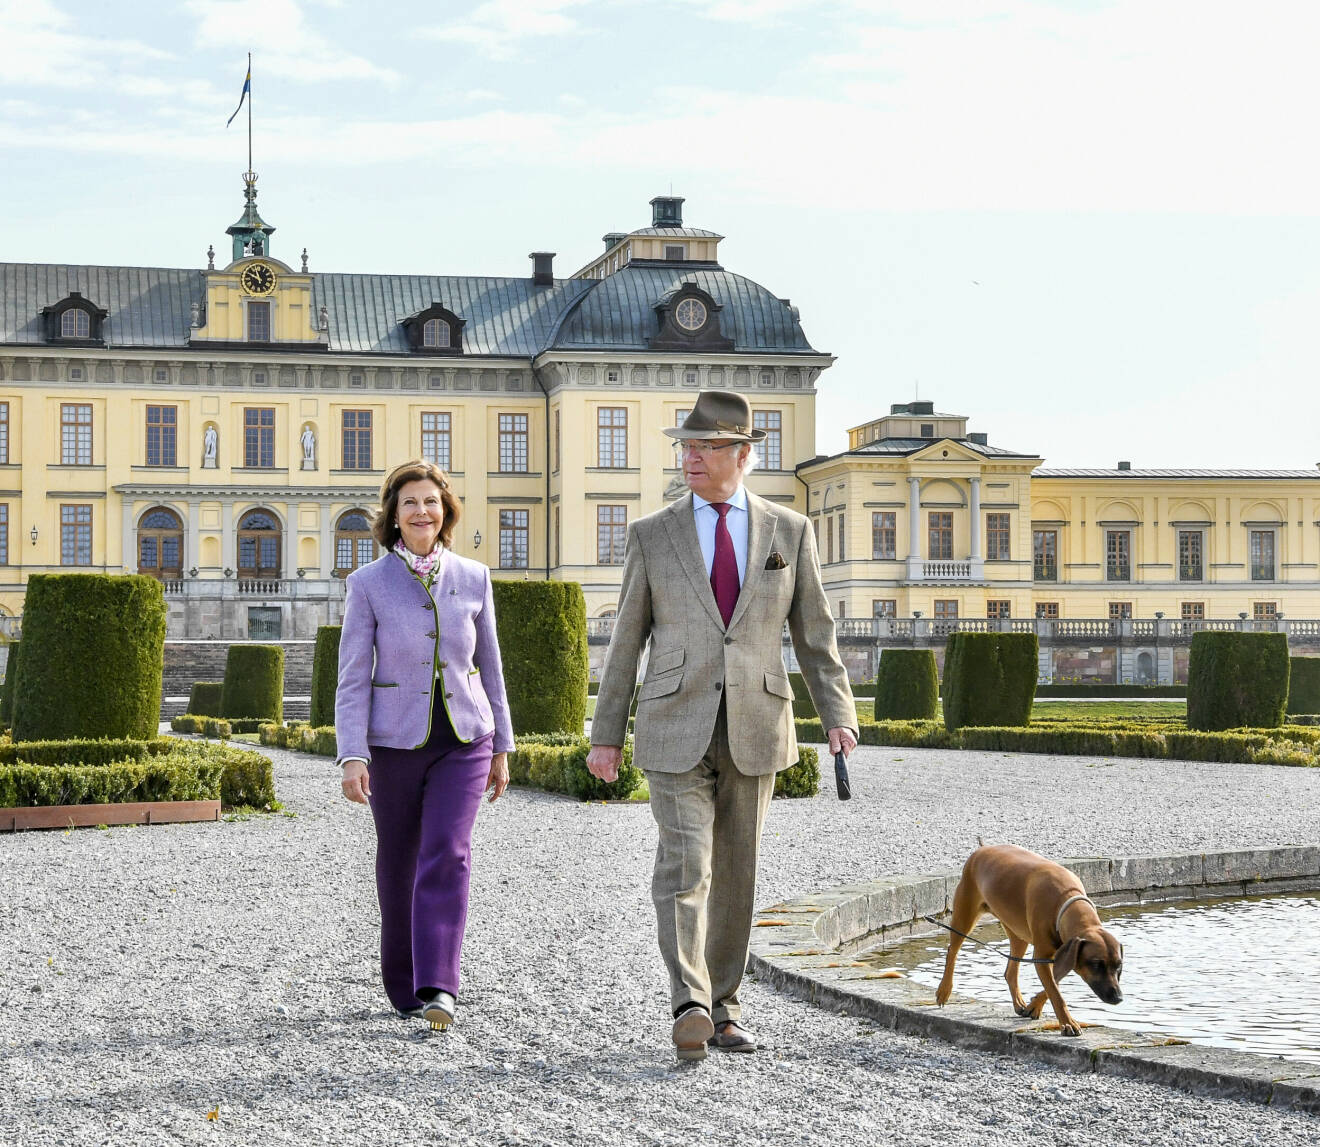 Kungaparet och hunden Brandie framför Drottningholms slott